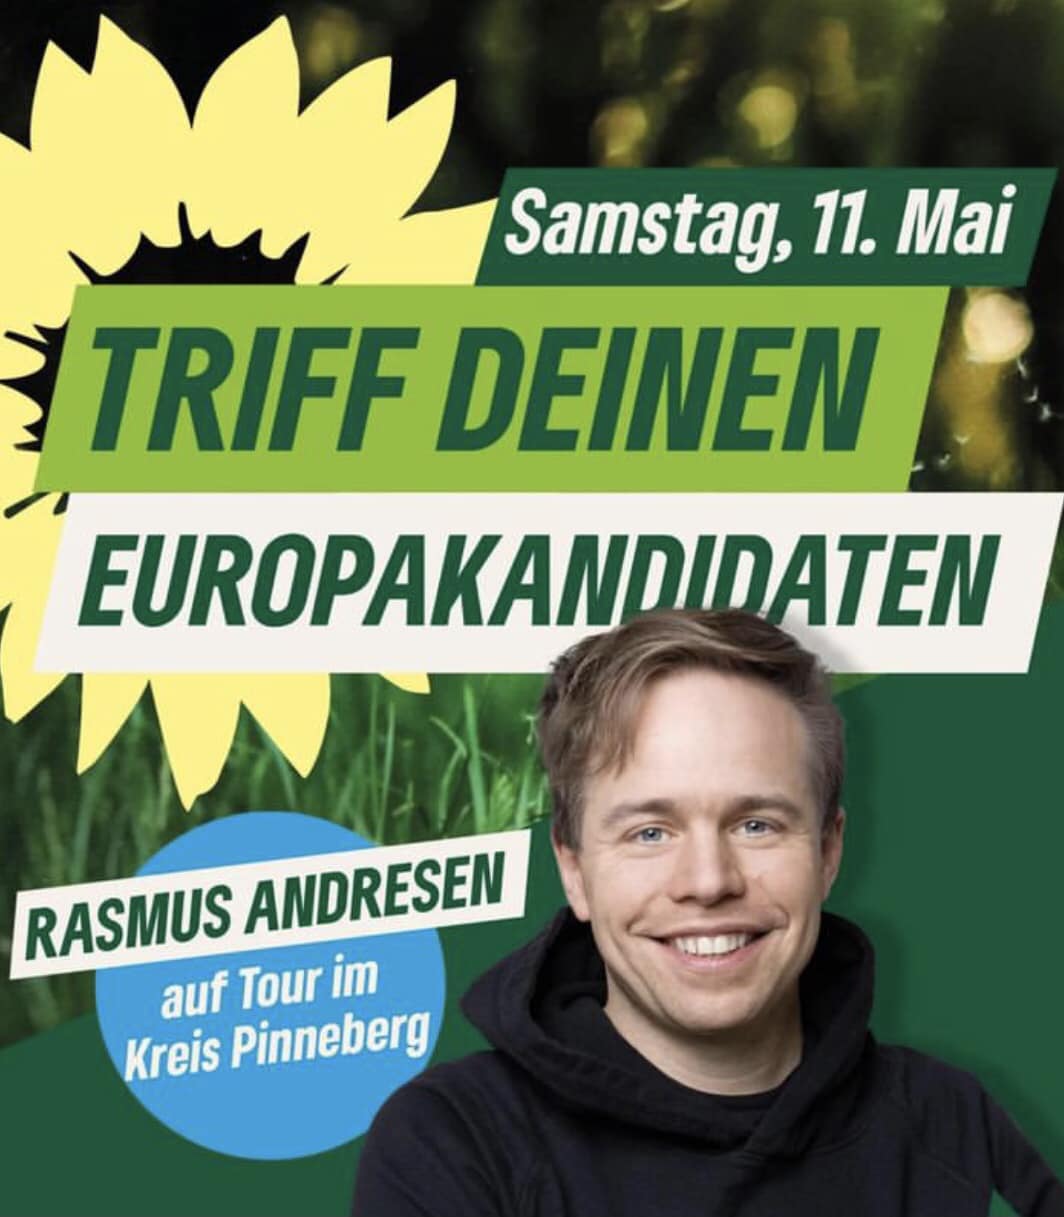 Ein Sharepic vom Eurpawahlkandidaten Rasmus Andresen.